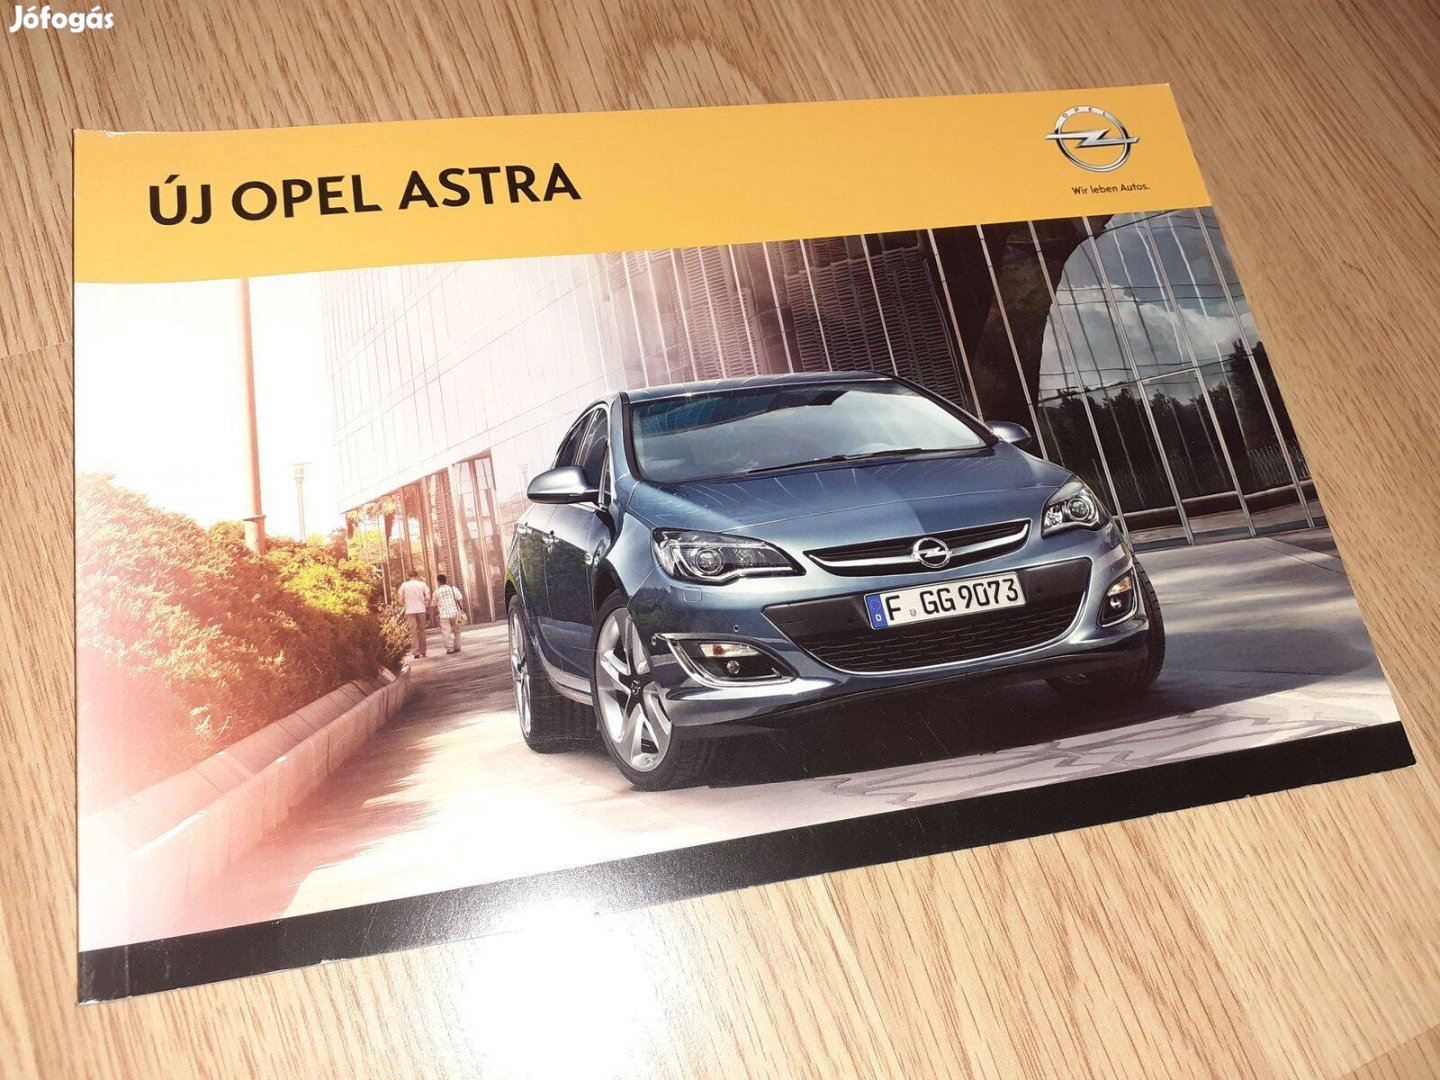 Opel Astra (J) prospektus - 2013, magyar nyelvű